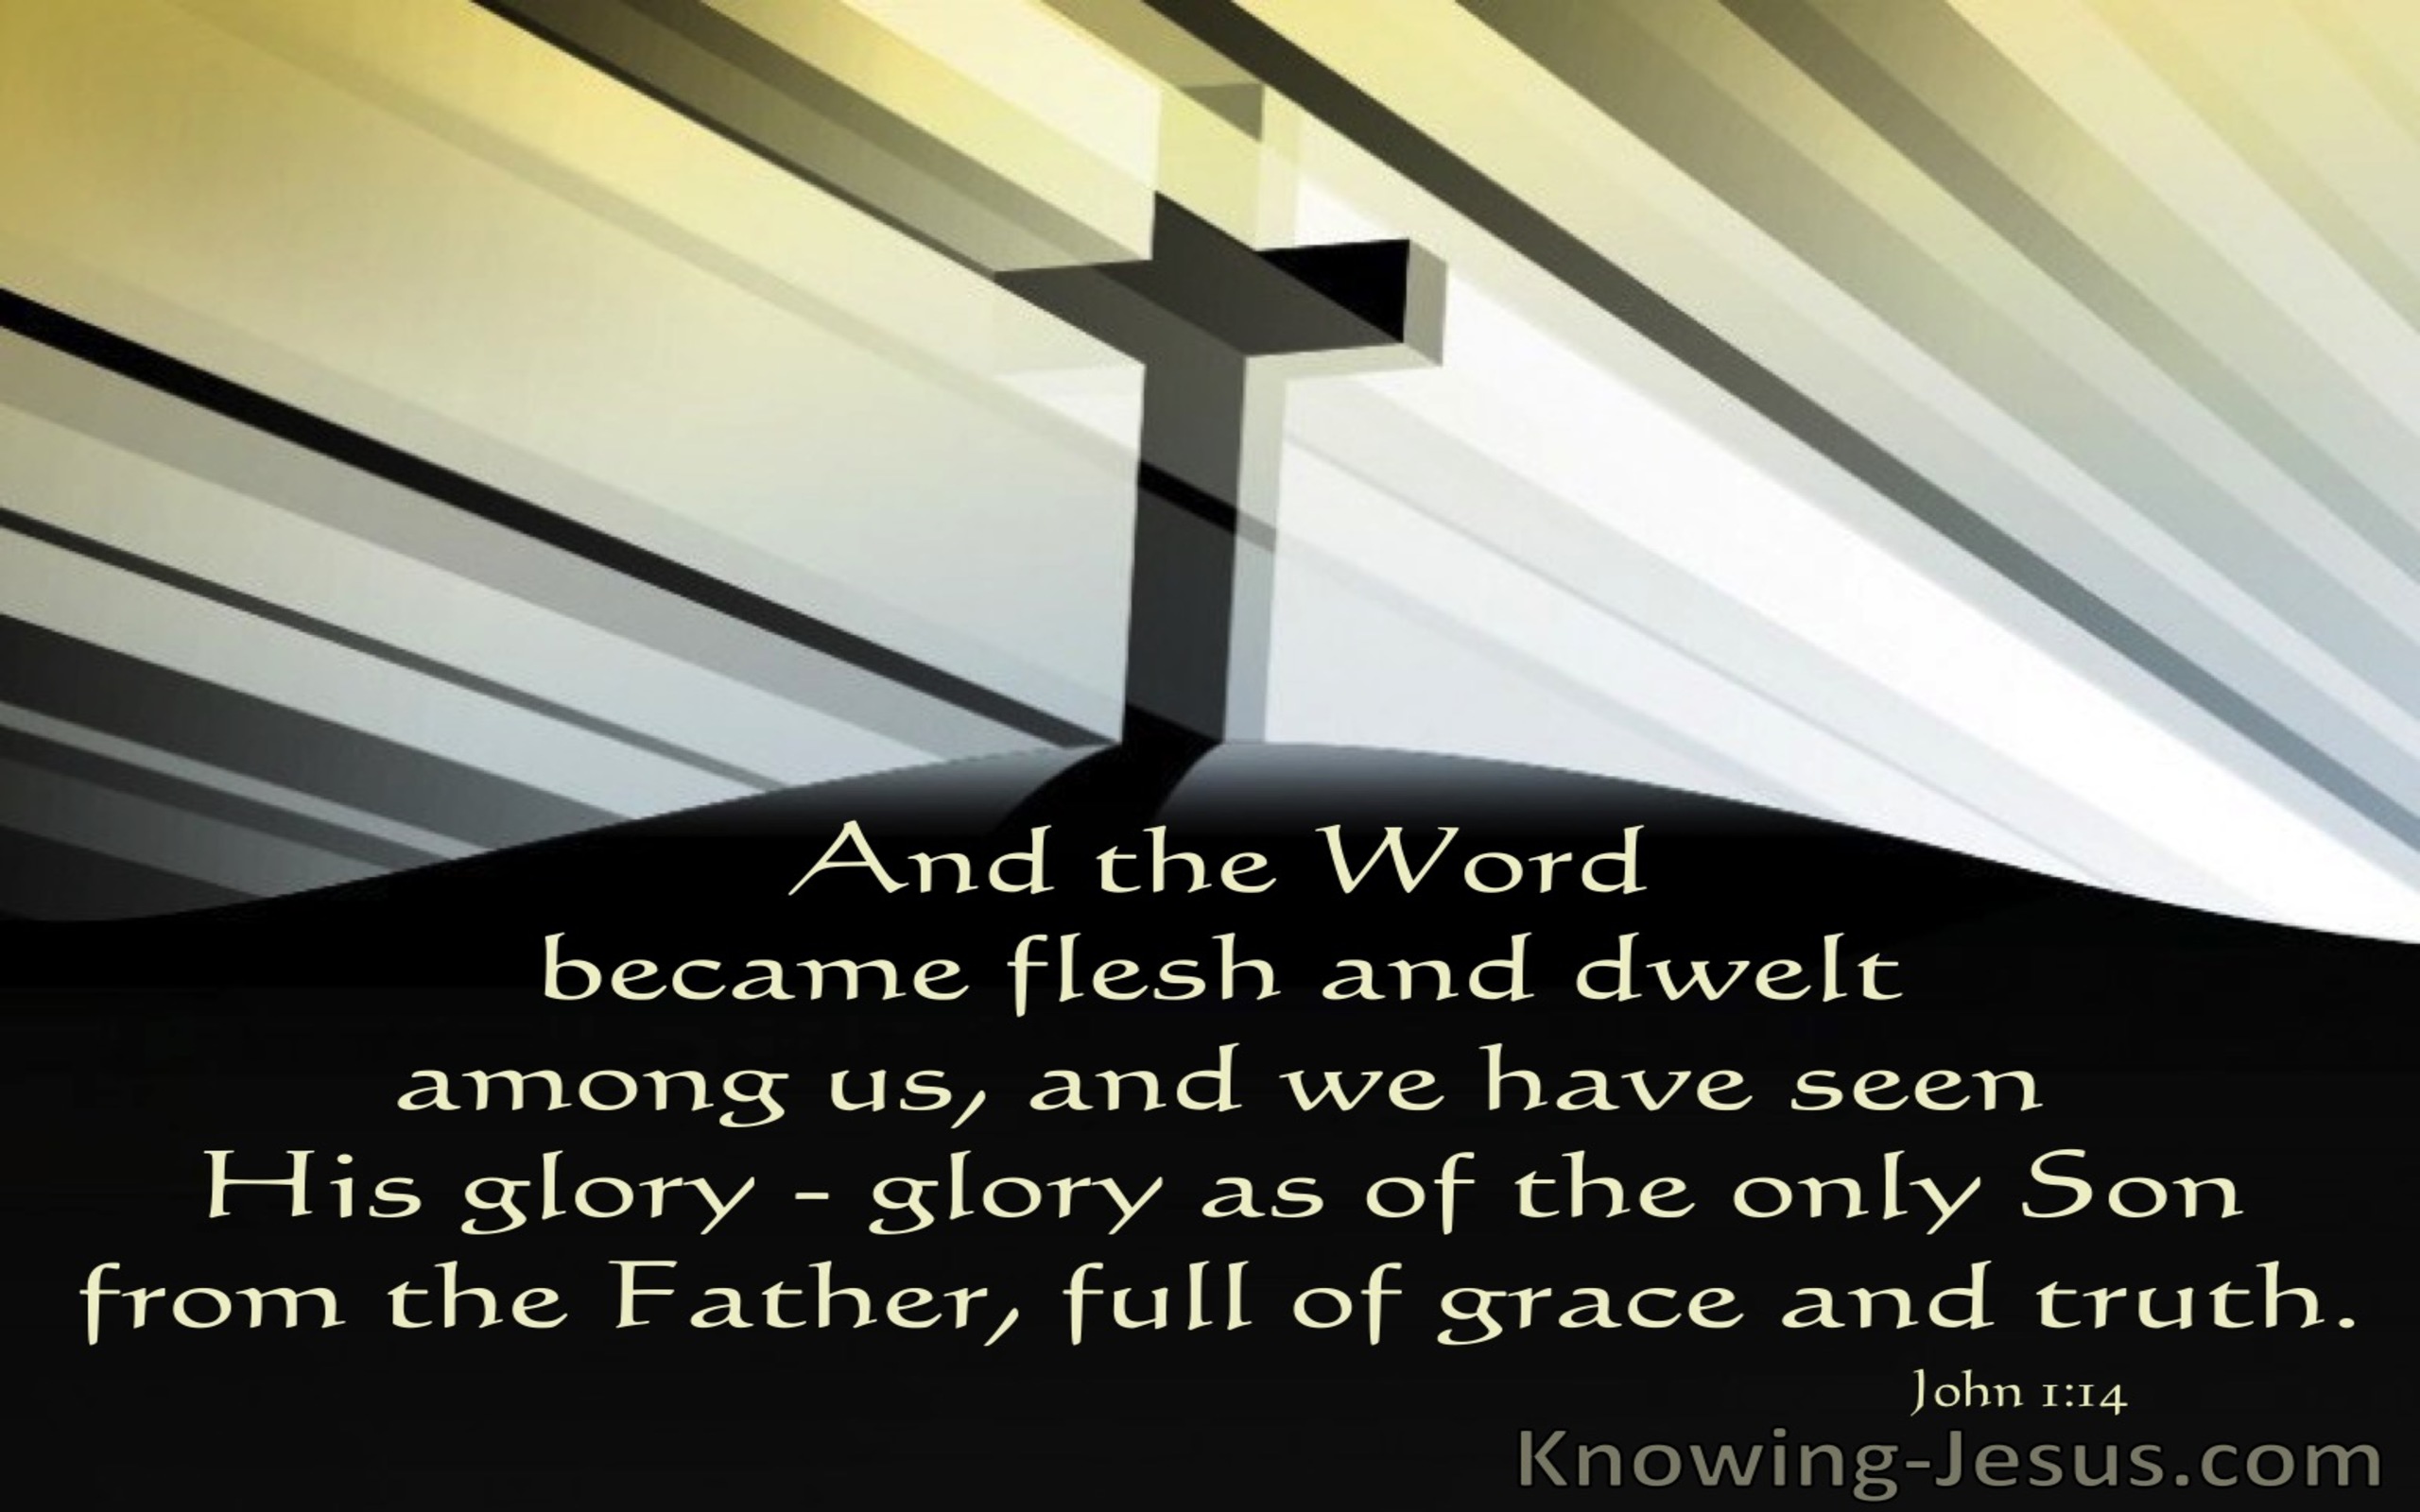 John 1:14 The Fullness of Grace (devotional)09:13 (black)